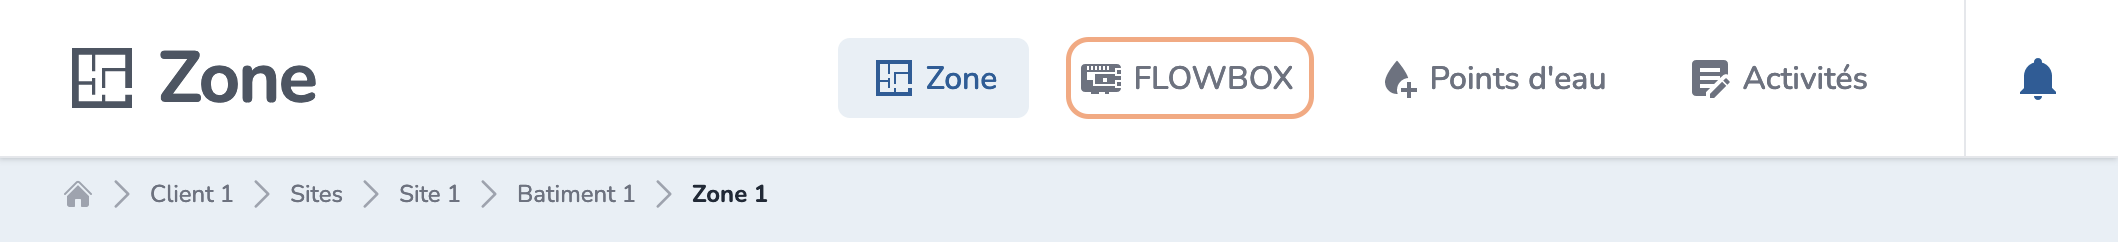 Zone to FLOWBOX tab